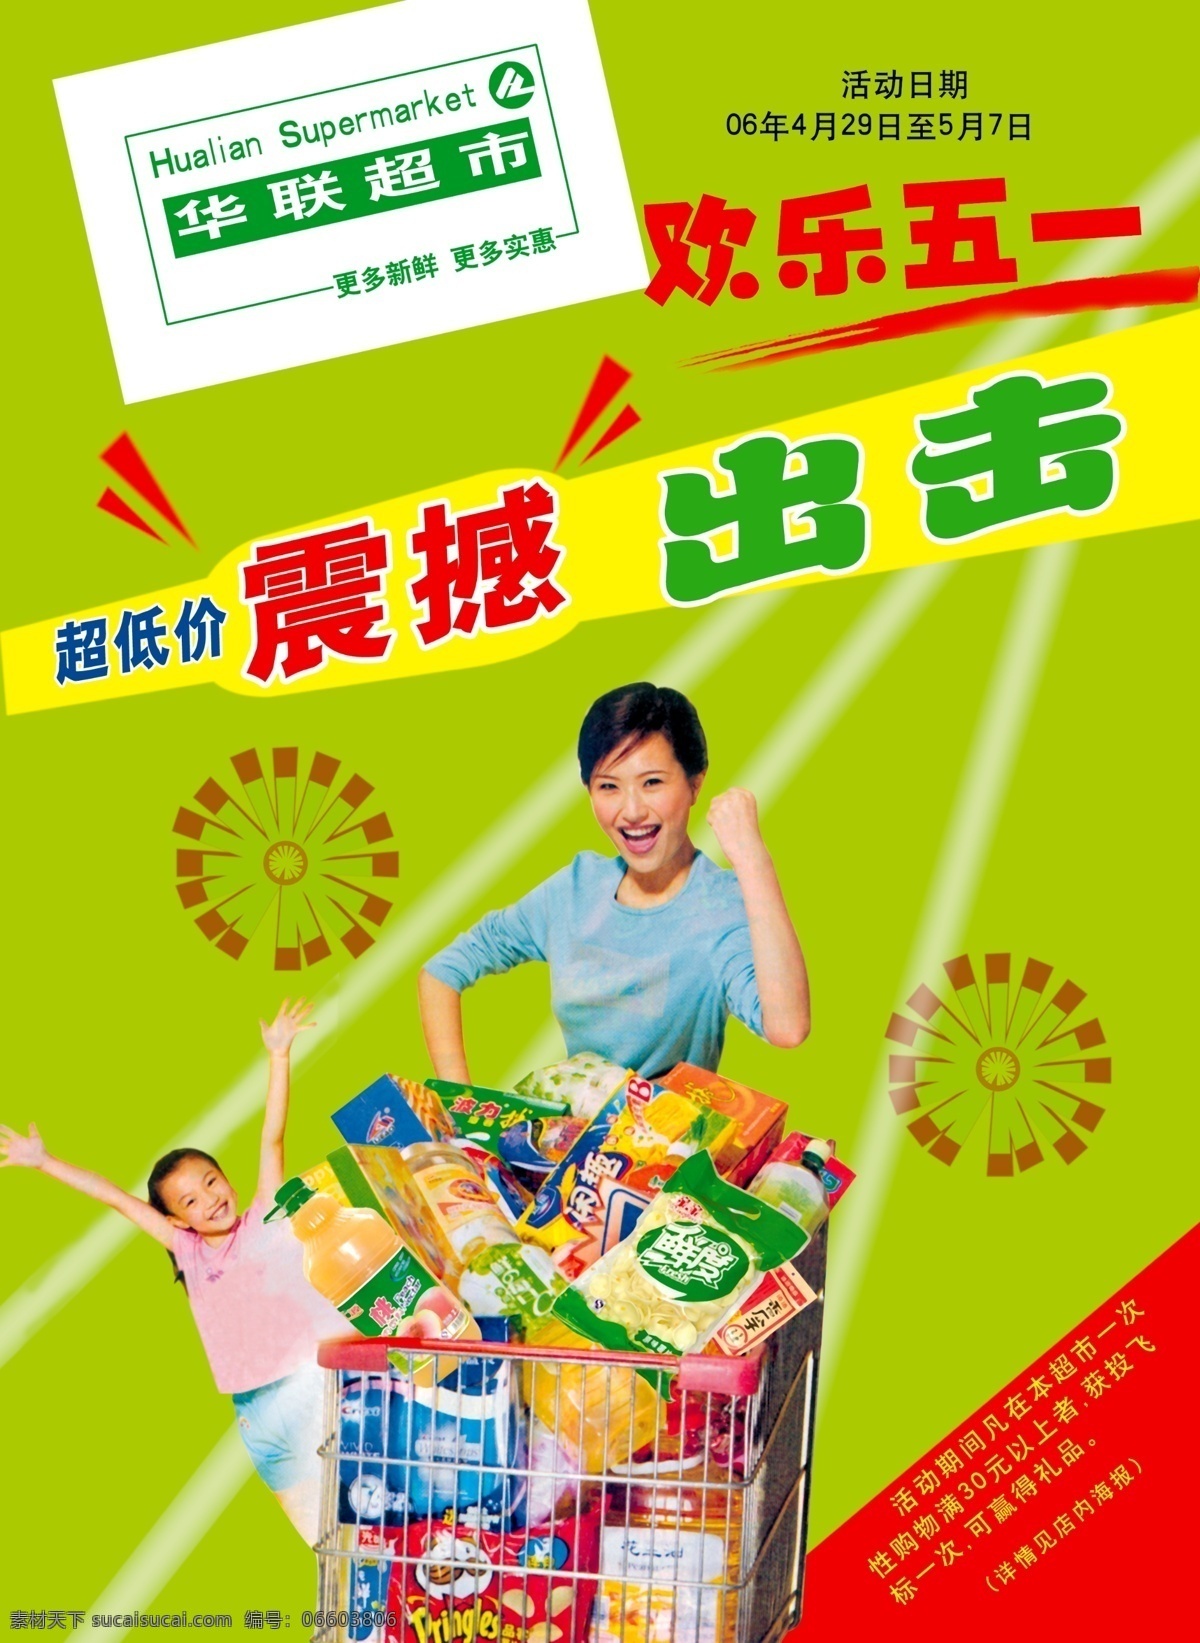 超市宣传海报 超市 宣传单 分层素材 格式 psd格式 设计素材 宣传海报 超市素材 psd源文件 绿色